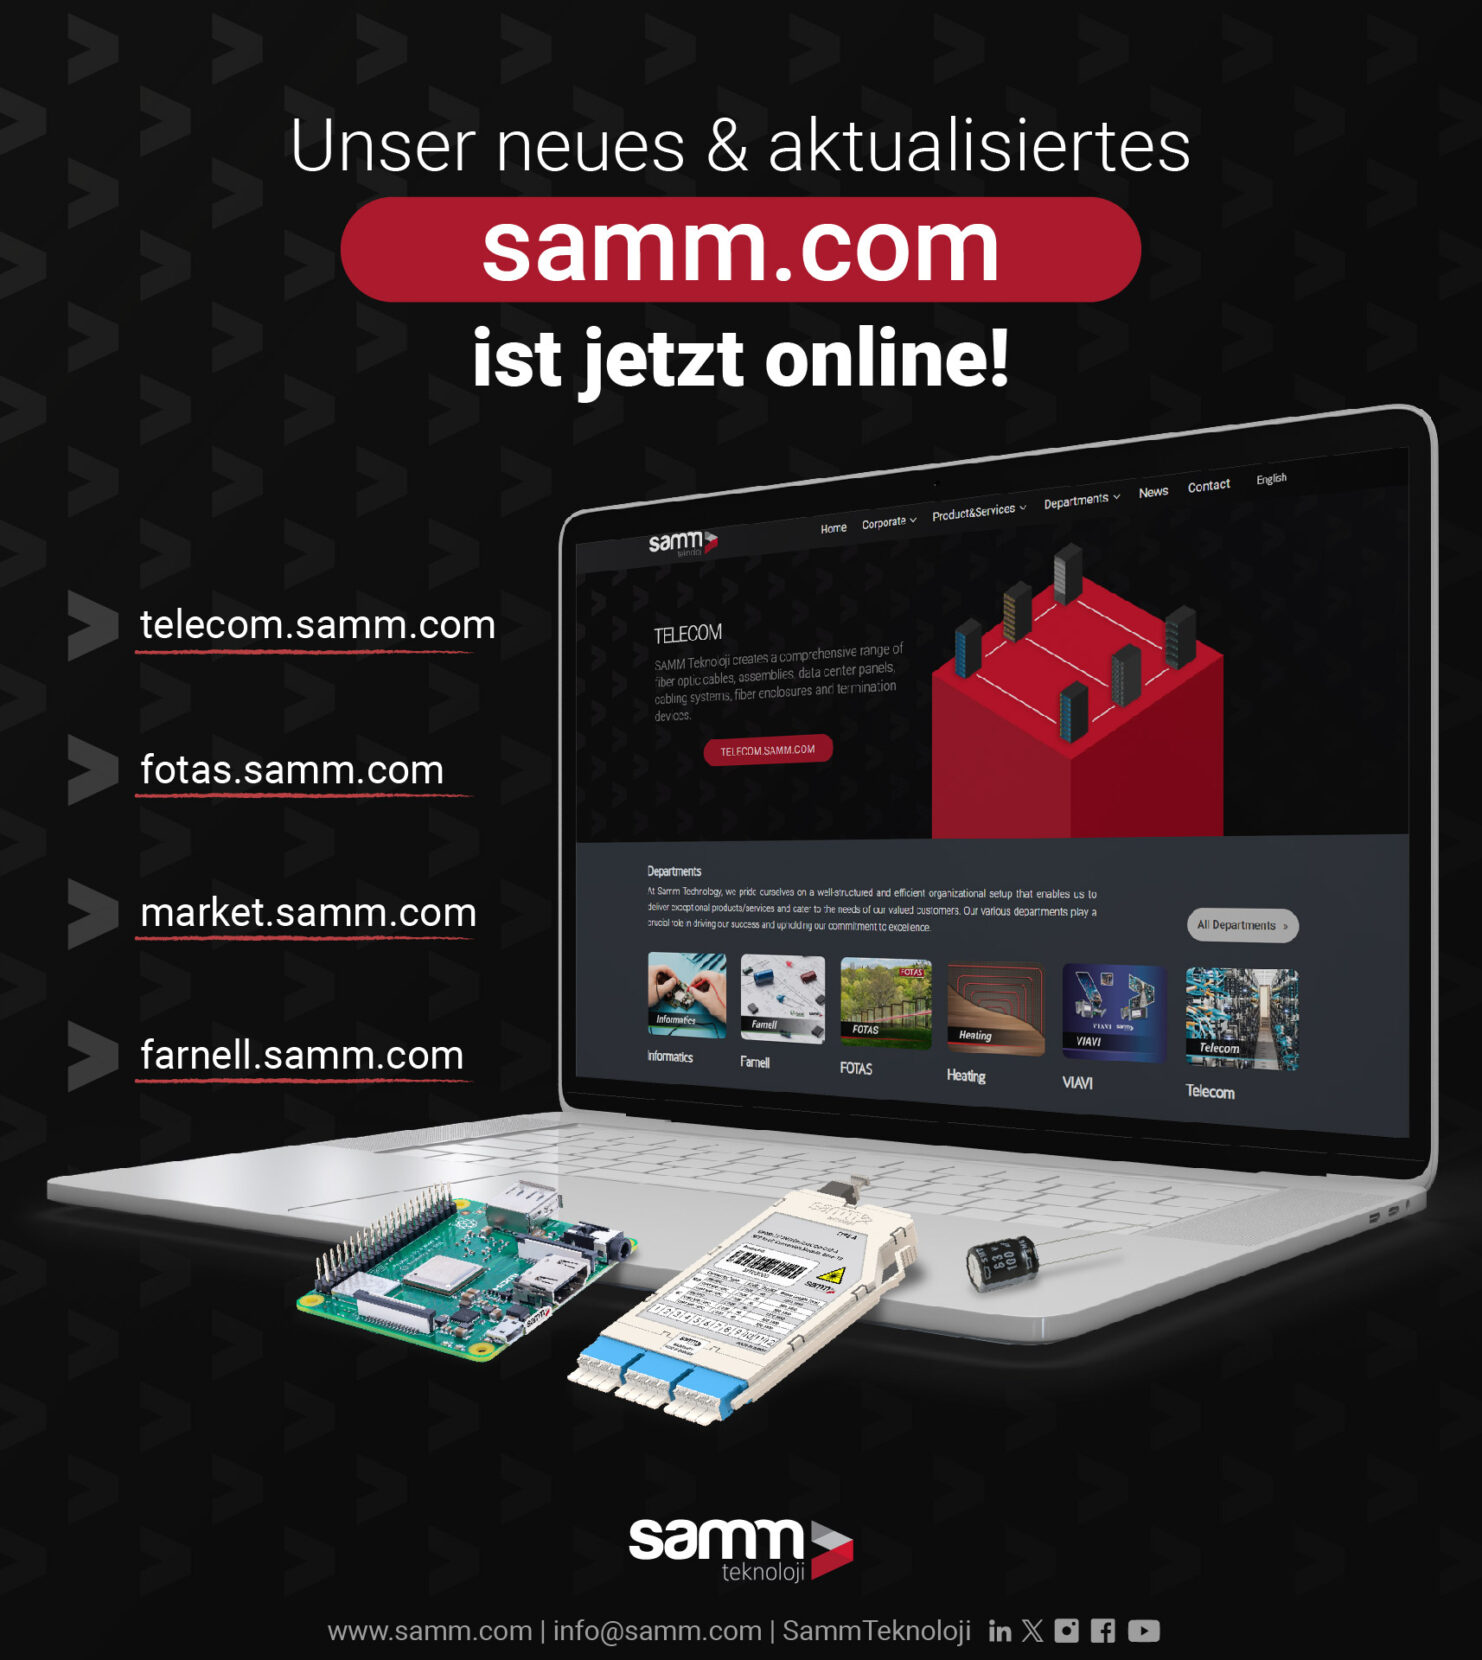 Samm.com bietet jetzt ein schnelleres, einfacheres und einfacheres Erlebnis.